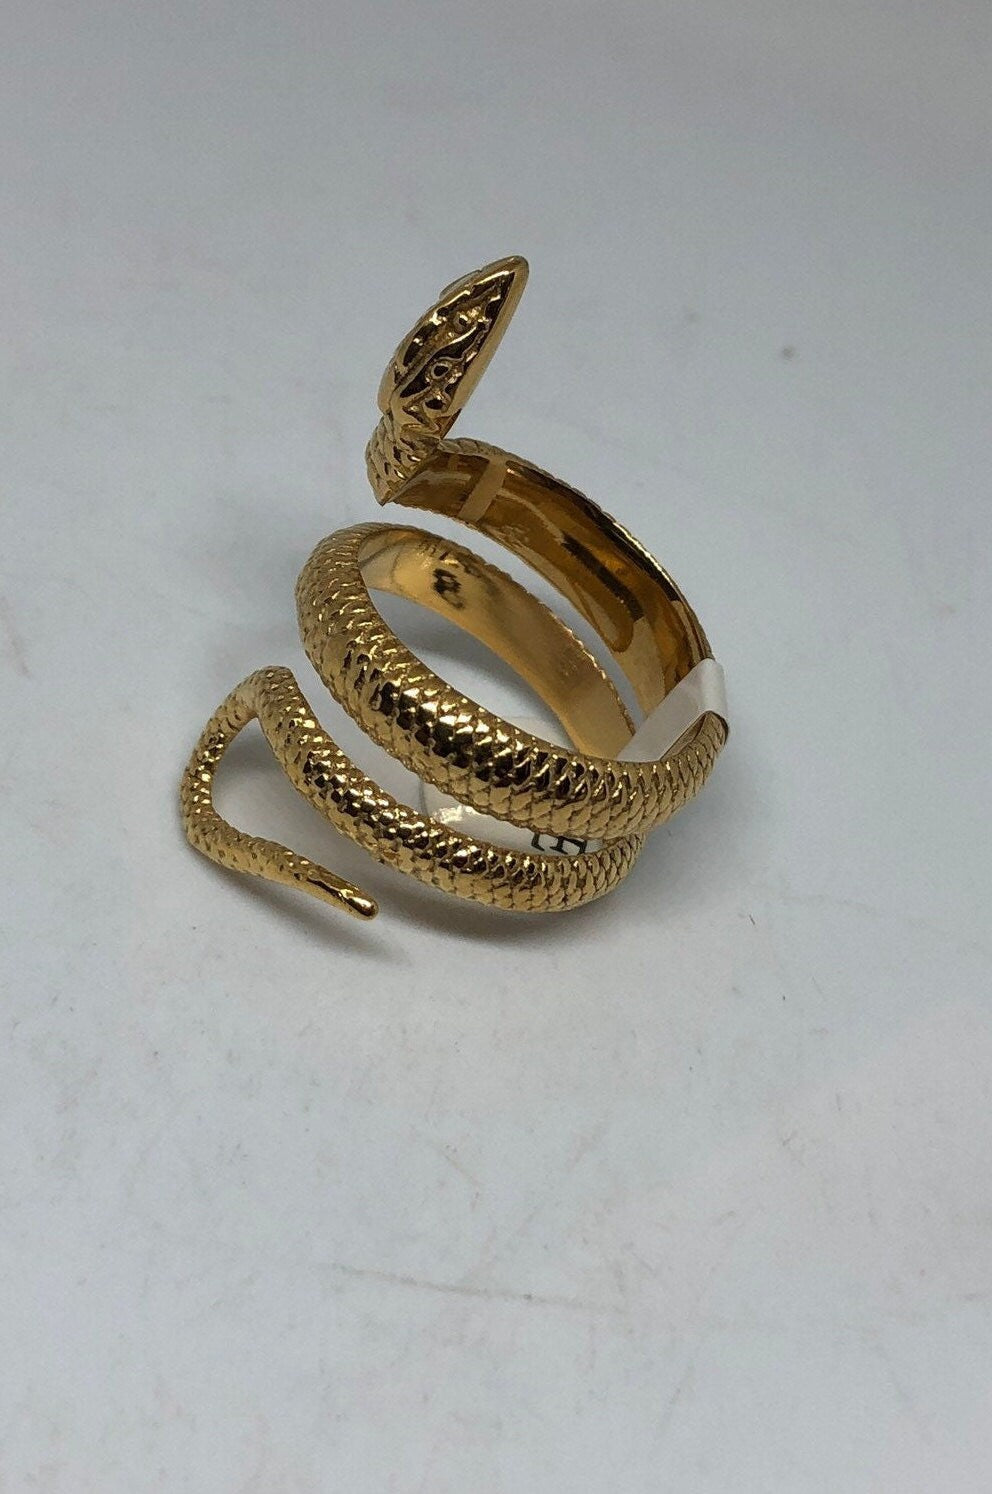 18k Gold Finish Stainless Steel Snake Ring on white